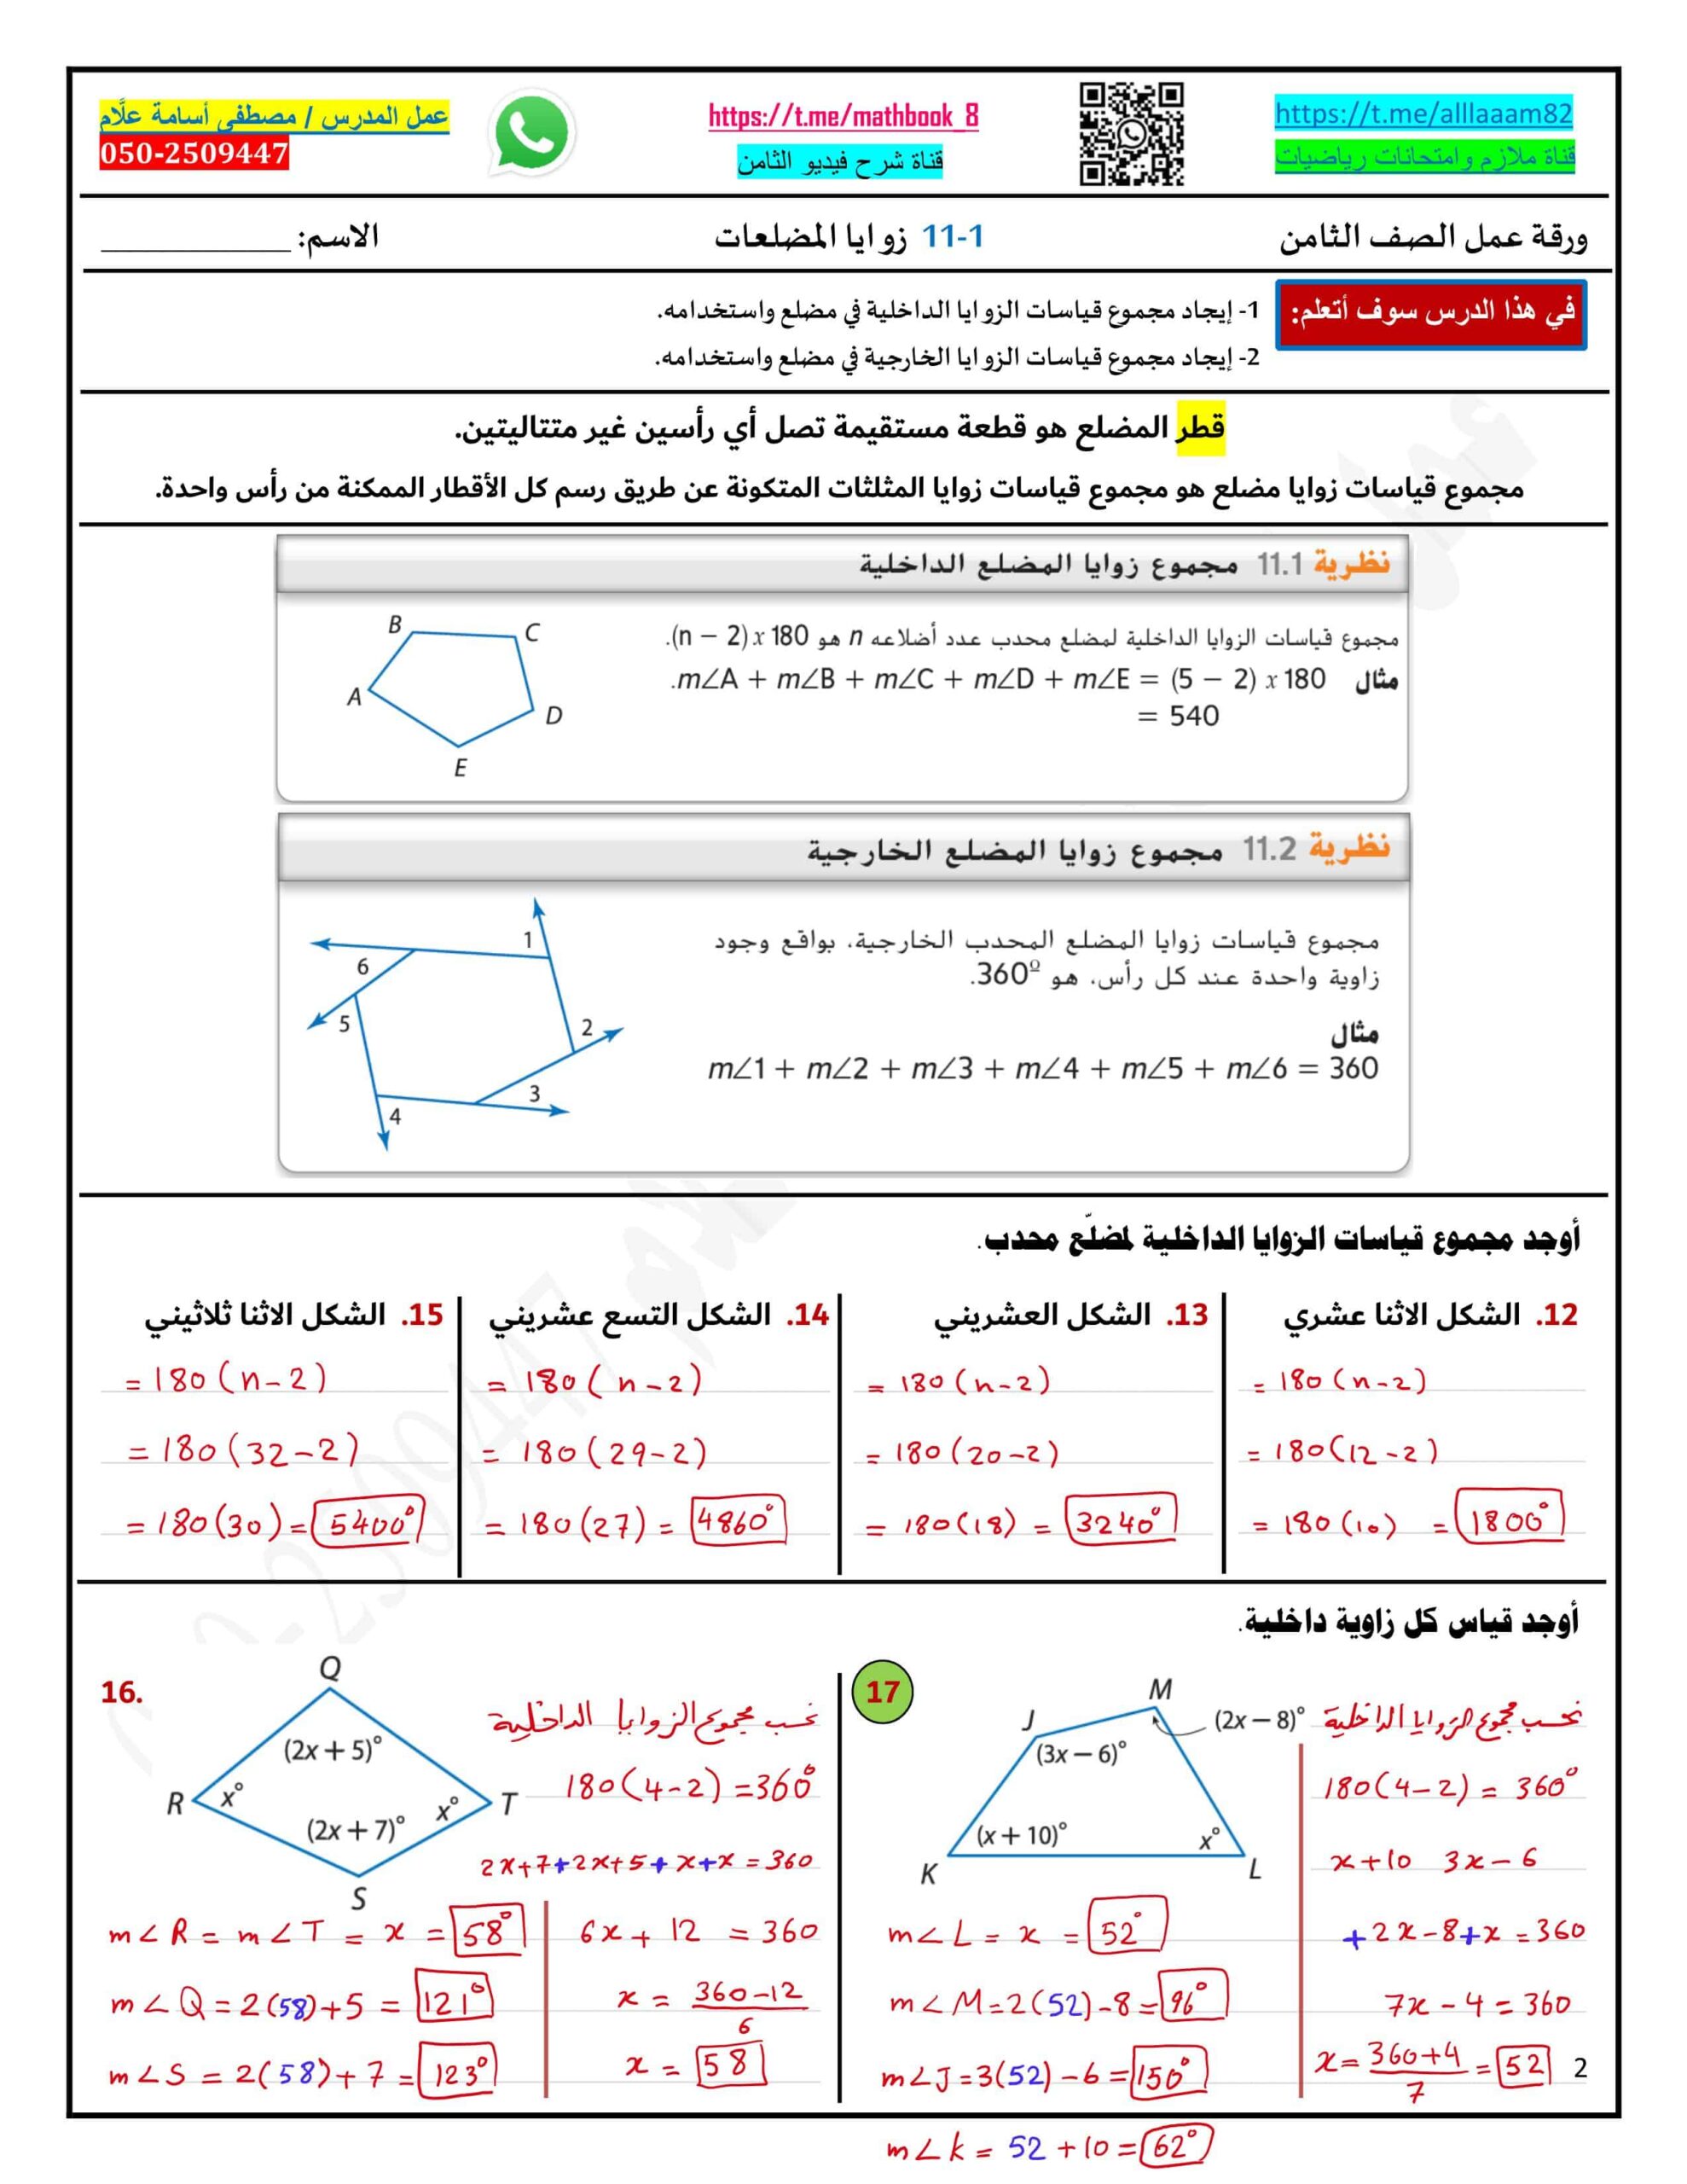 حل ورقة عمل زوايا المضلعات الرياضيات المتكاملة الصف الثامن